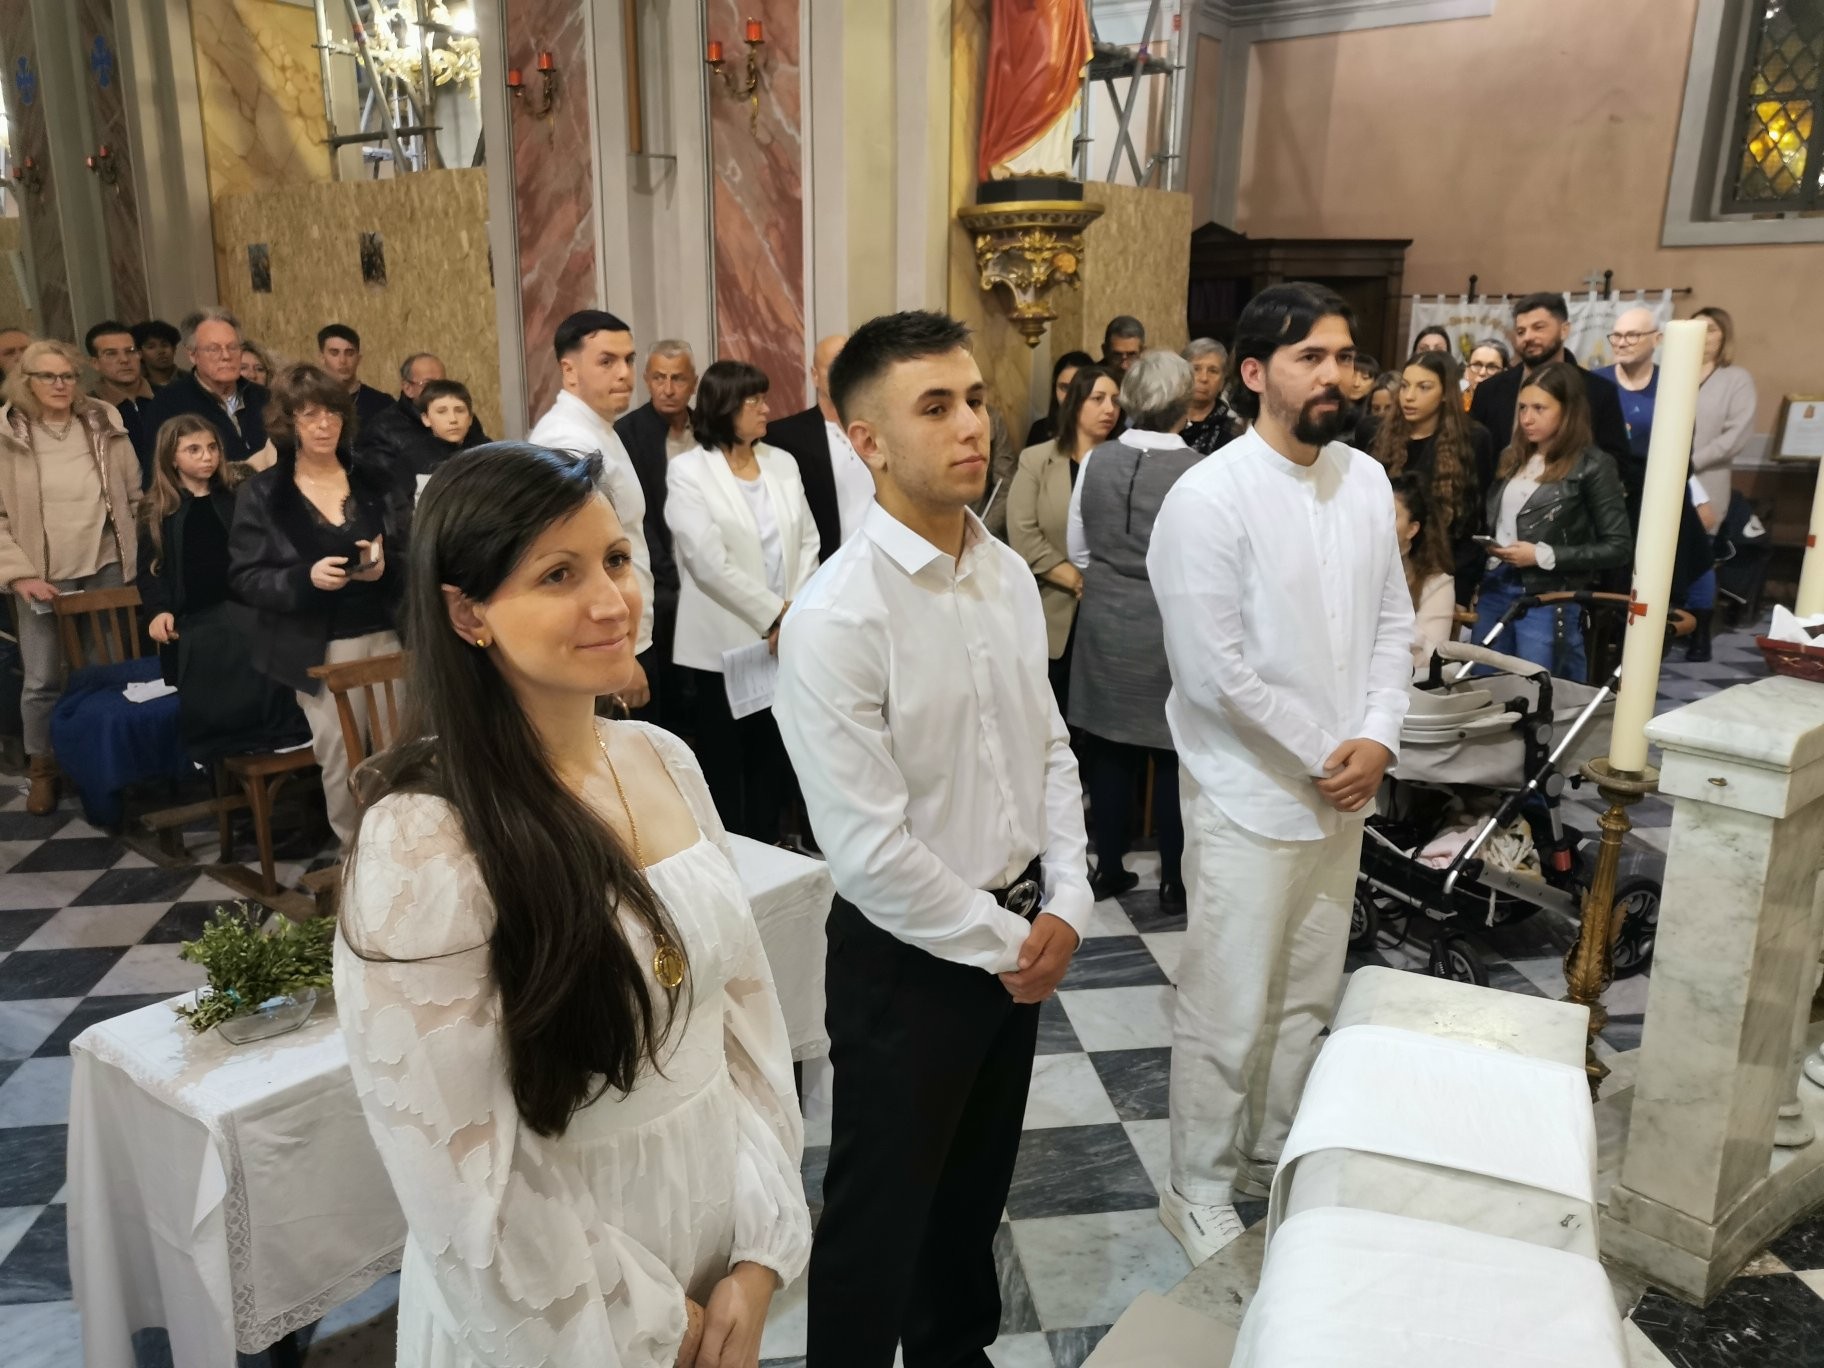 Entrée dans la liturgie baptismale